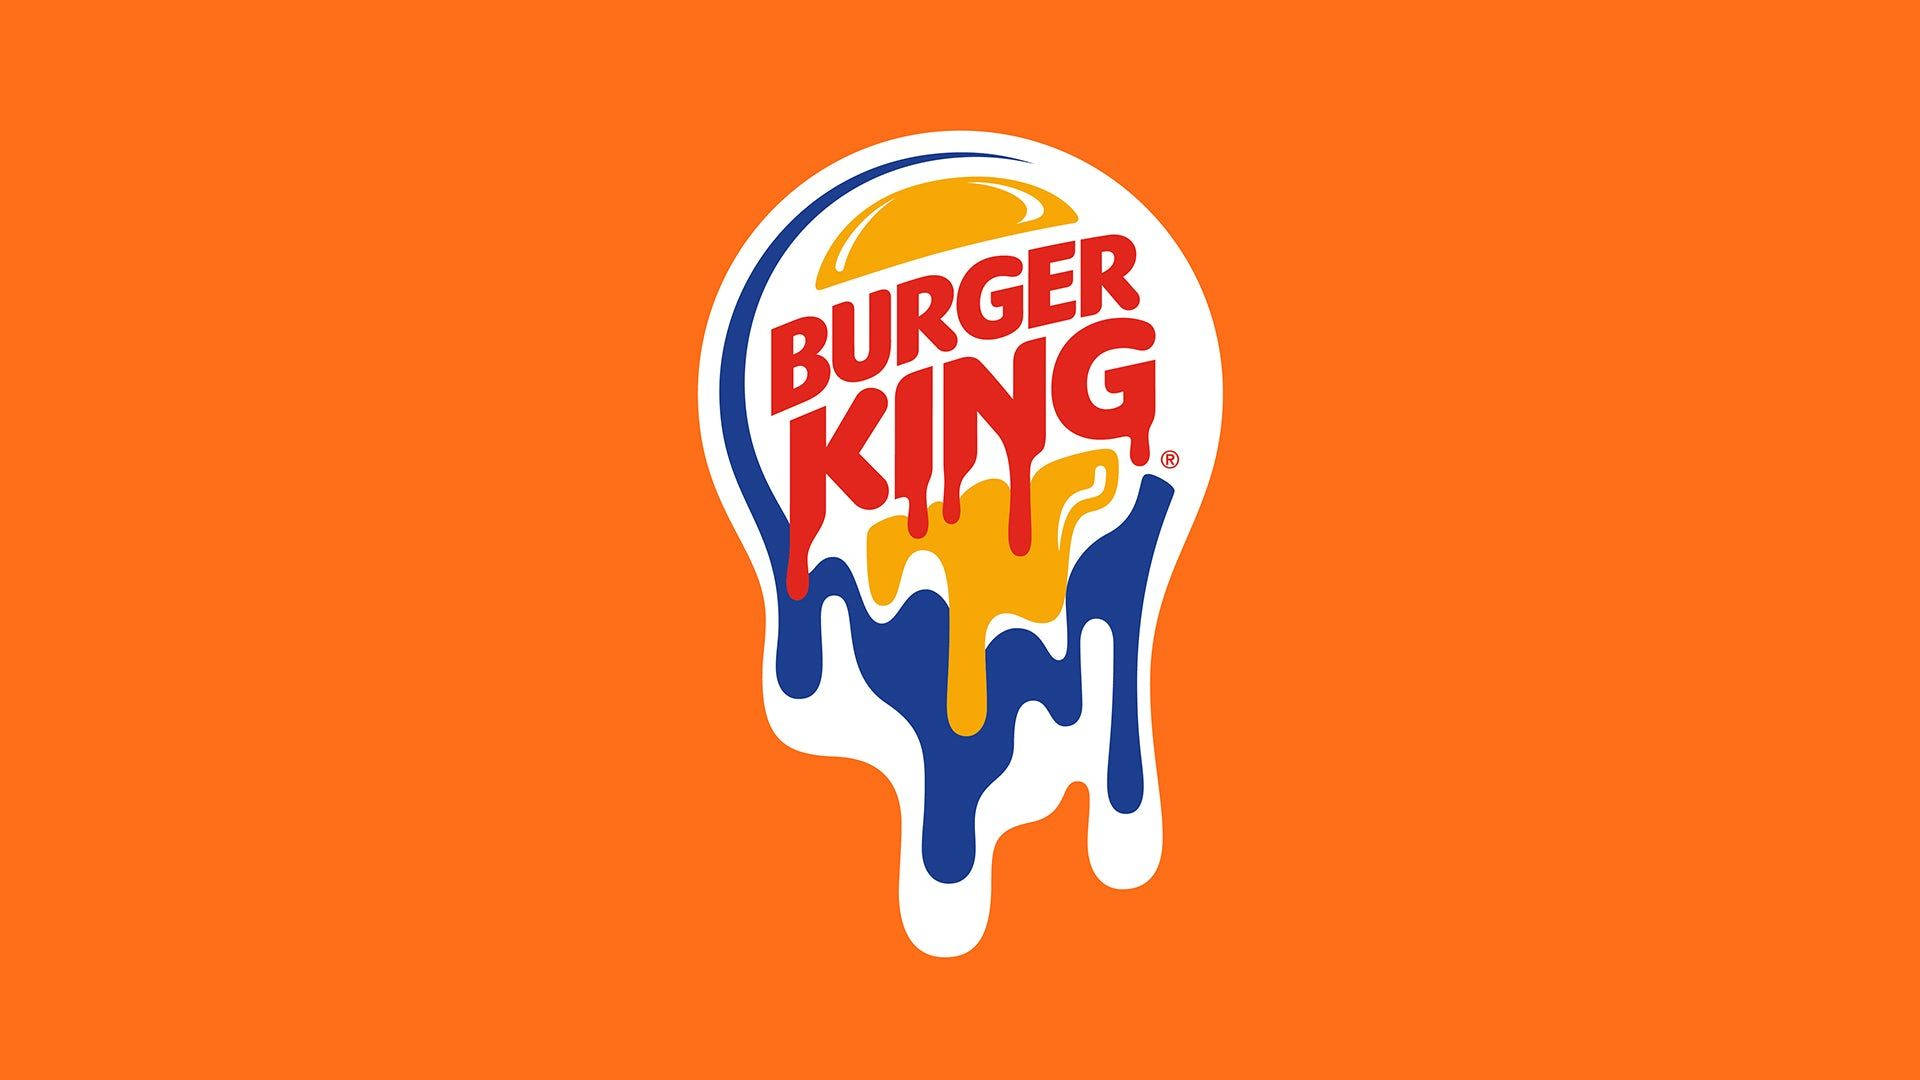 Smudged Burger King Logo Background